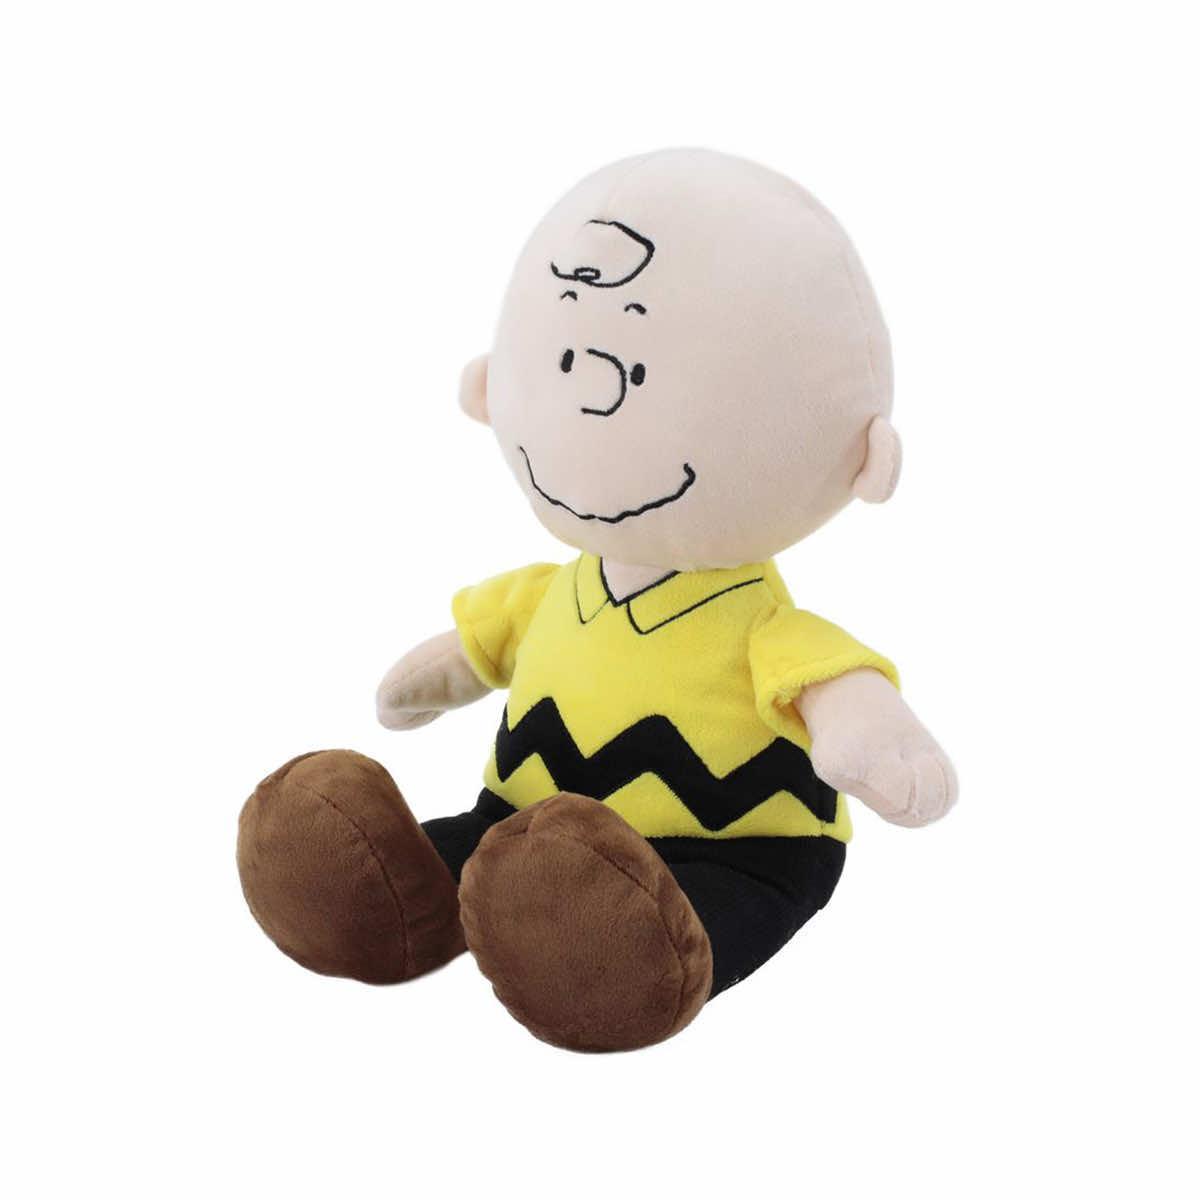 Peanuts Snoopy Metal Keyring - Snoopy Charlie Brown Woodstock Doll Charm